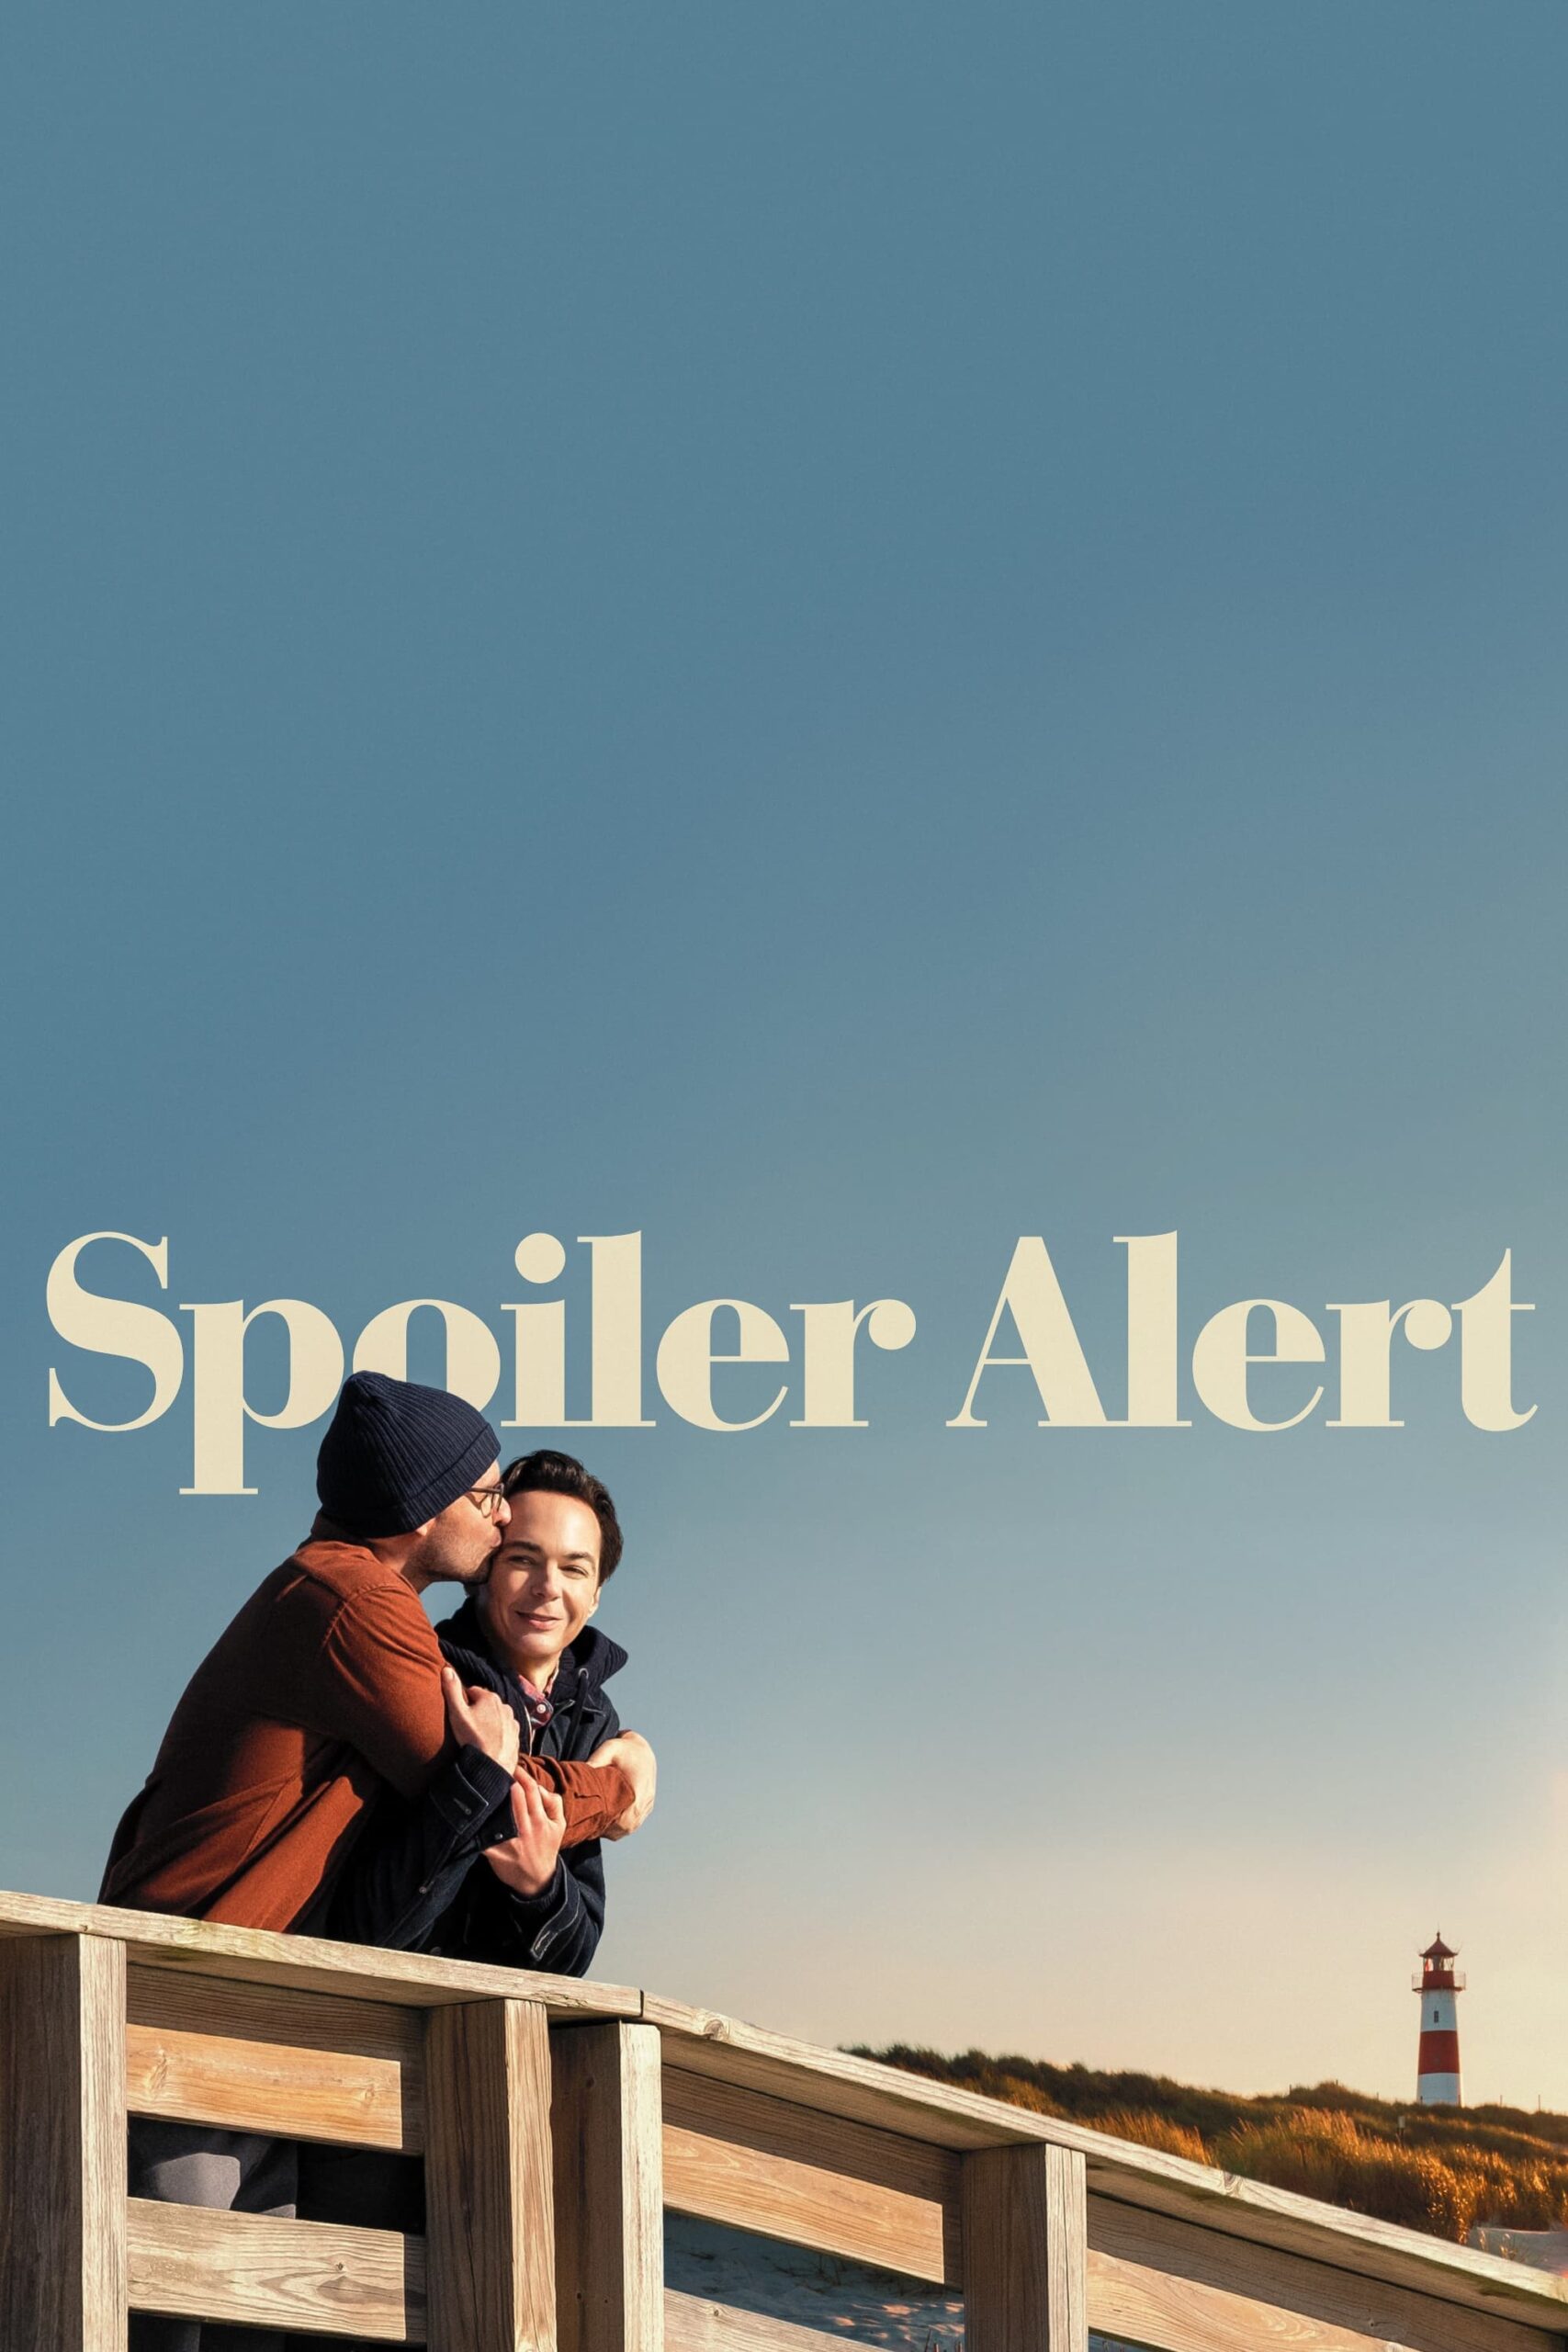 Poster for the movie "Spoiler Alert"